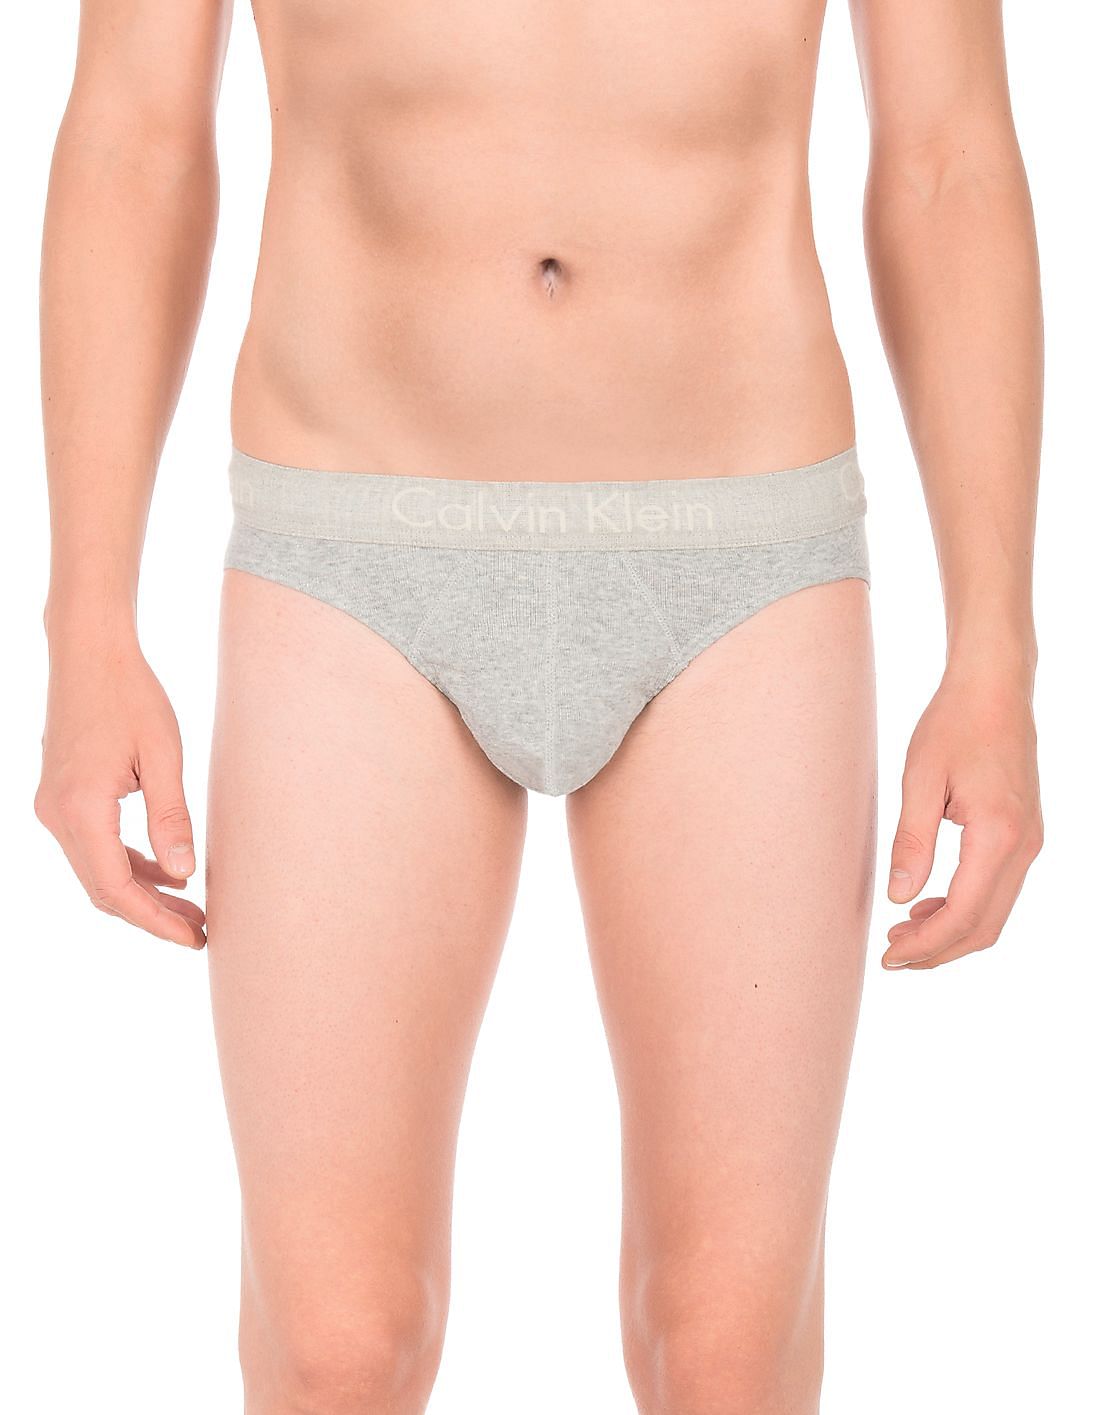 Buy Calvin Klein Underwear Cotton Hip Briefs - Pack Of 2 